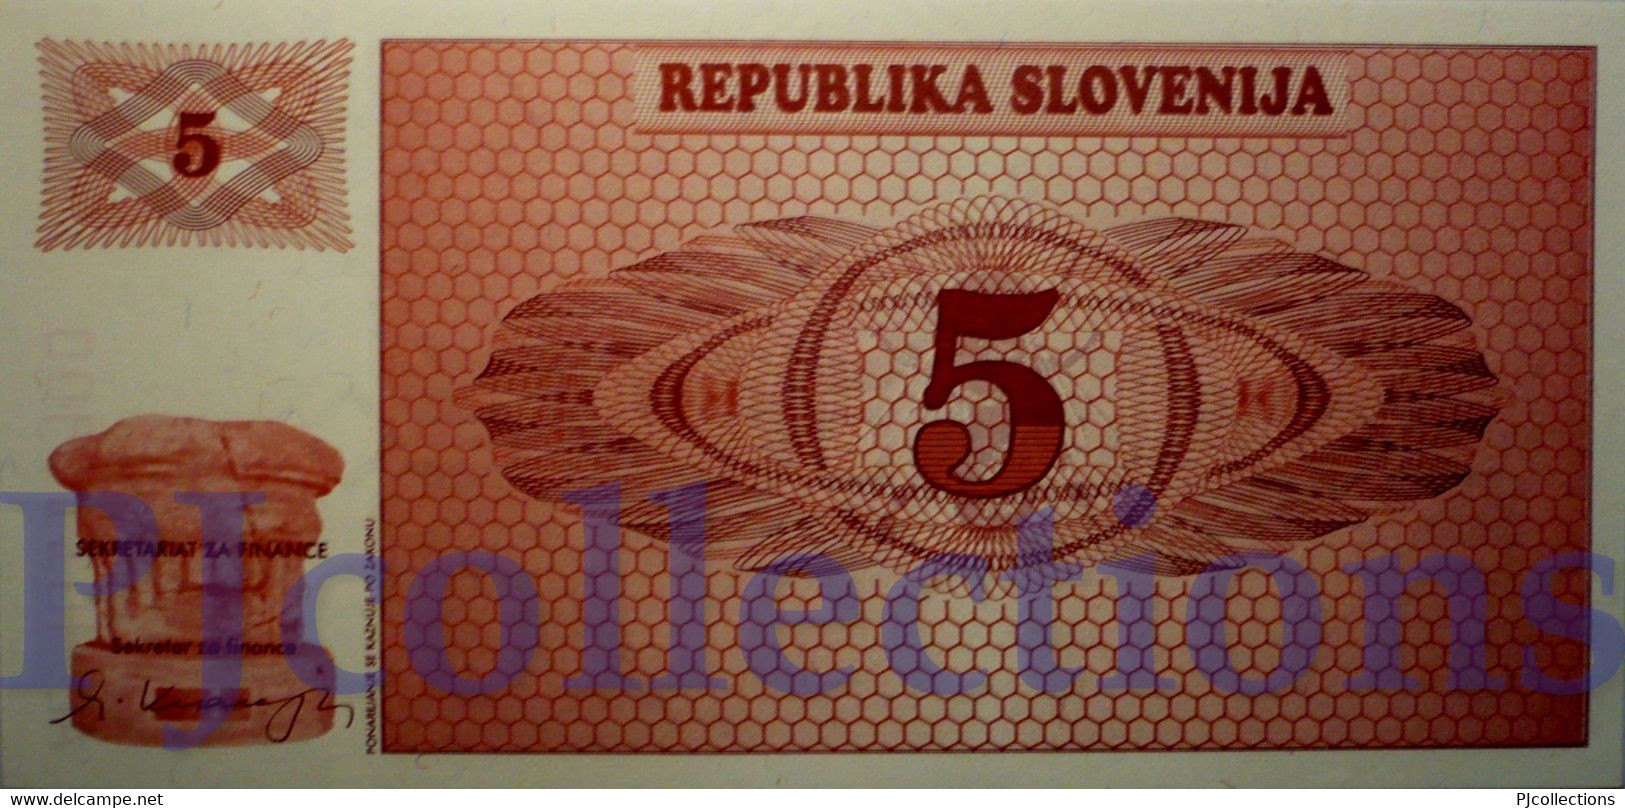 SLOVENIA 5 TOLARJEV 1990 PICK 3s1 SPECIMEN UNC - Slovénie